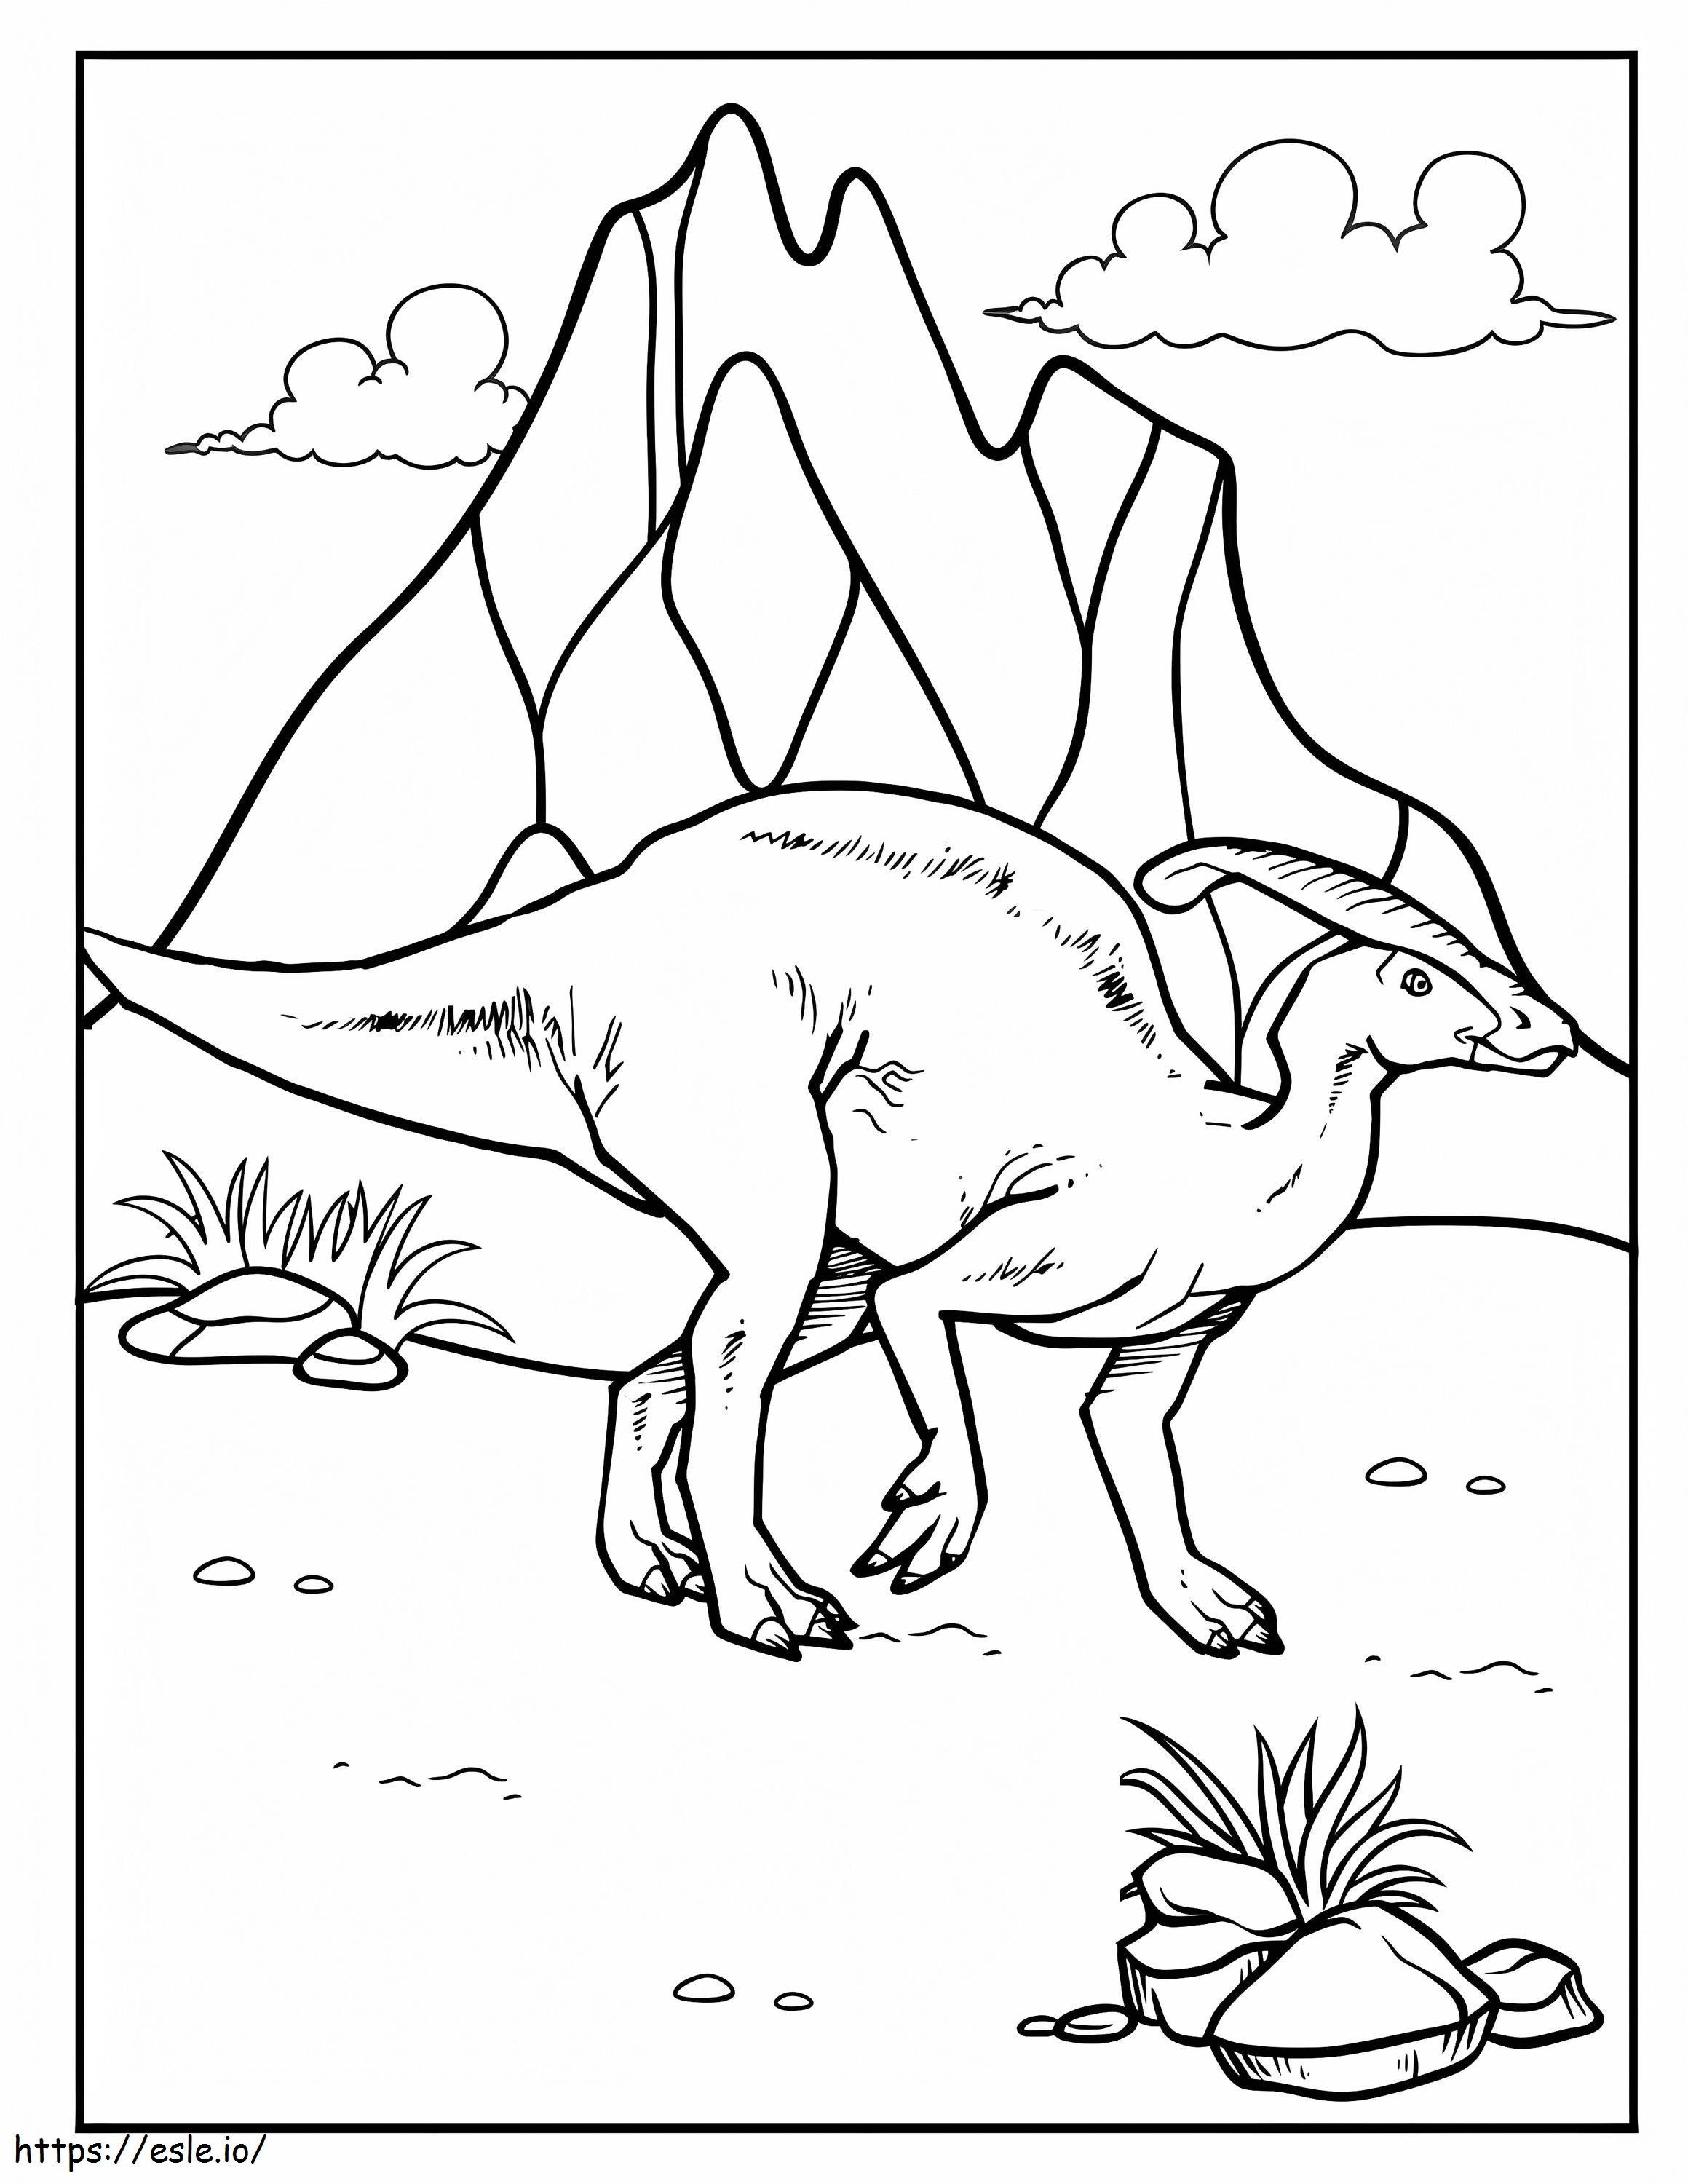 Coloriage Parasaurolophus 9 à imprimer dessin